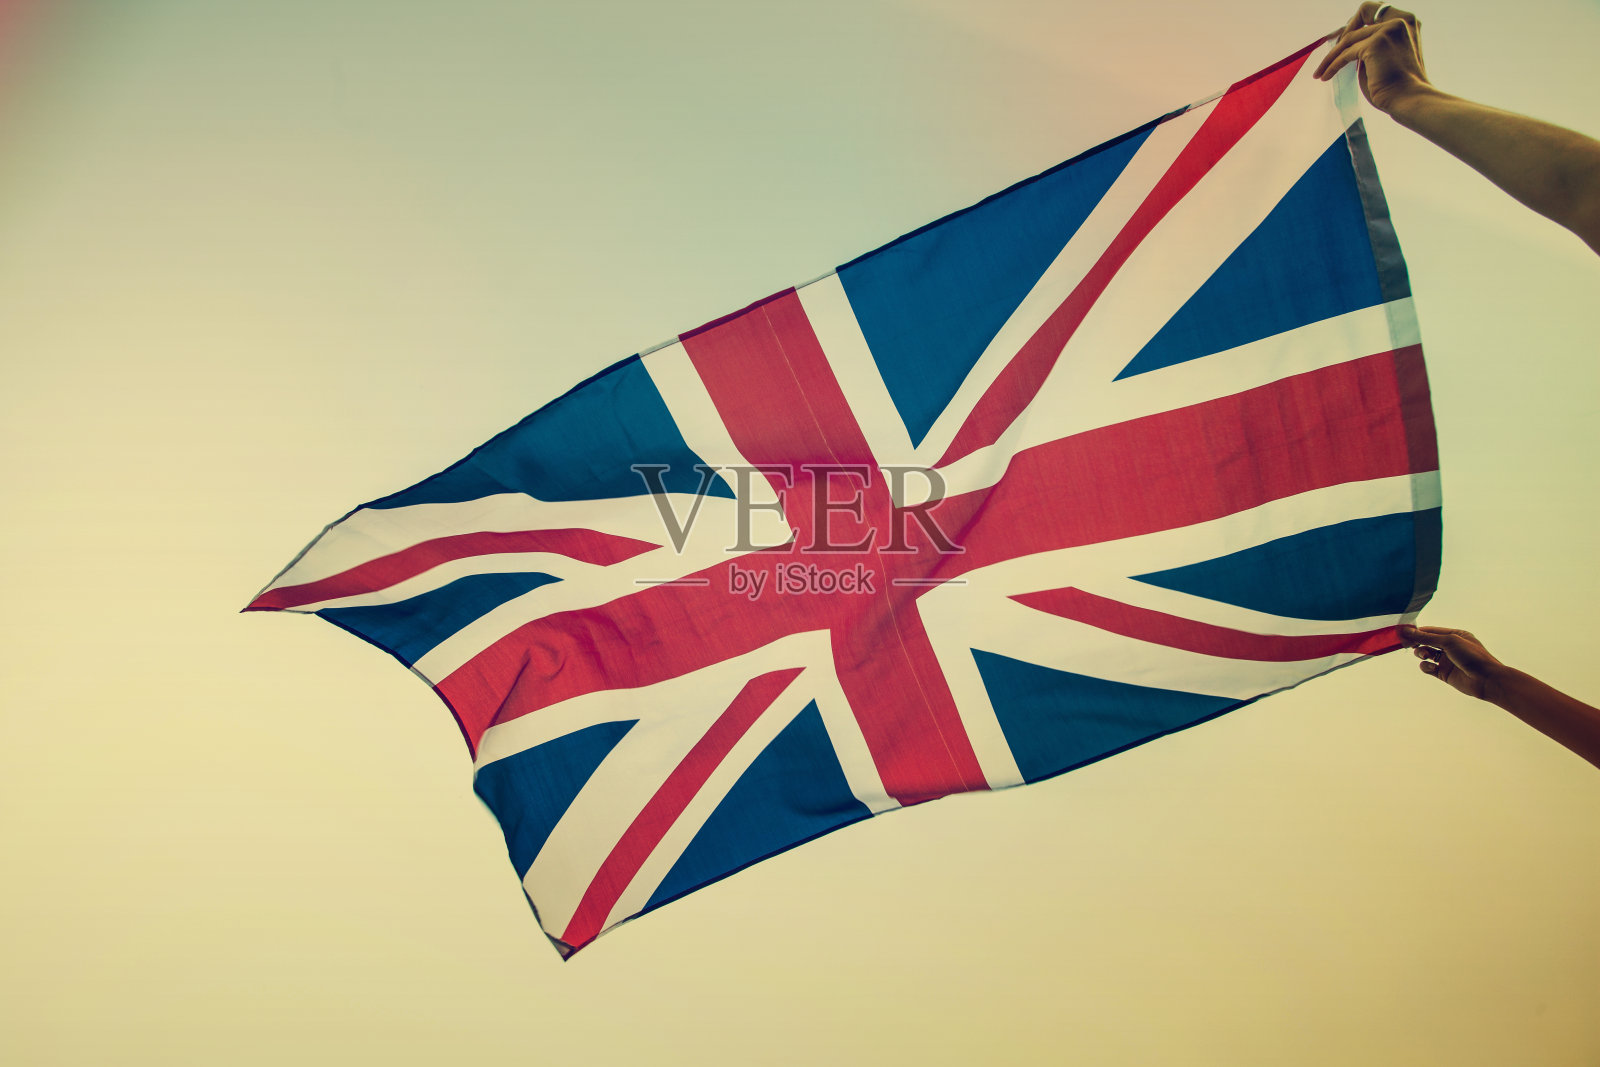 英国国旗图案 含义图片